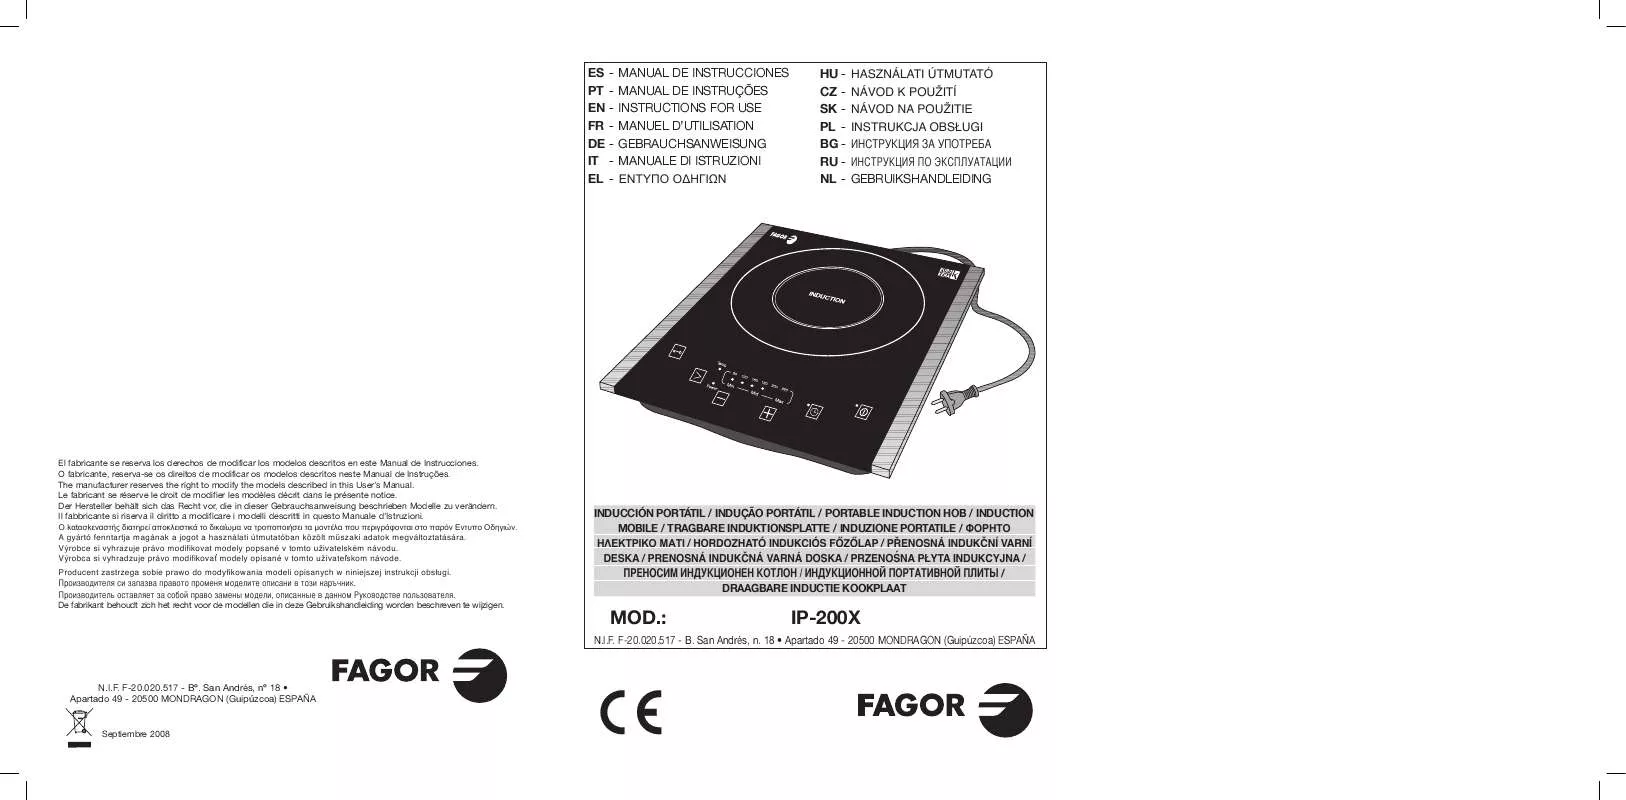 Mode d'emploi FAGOR IP-200X